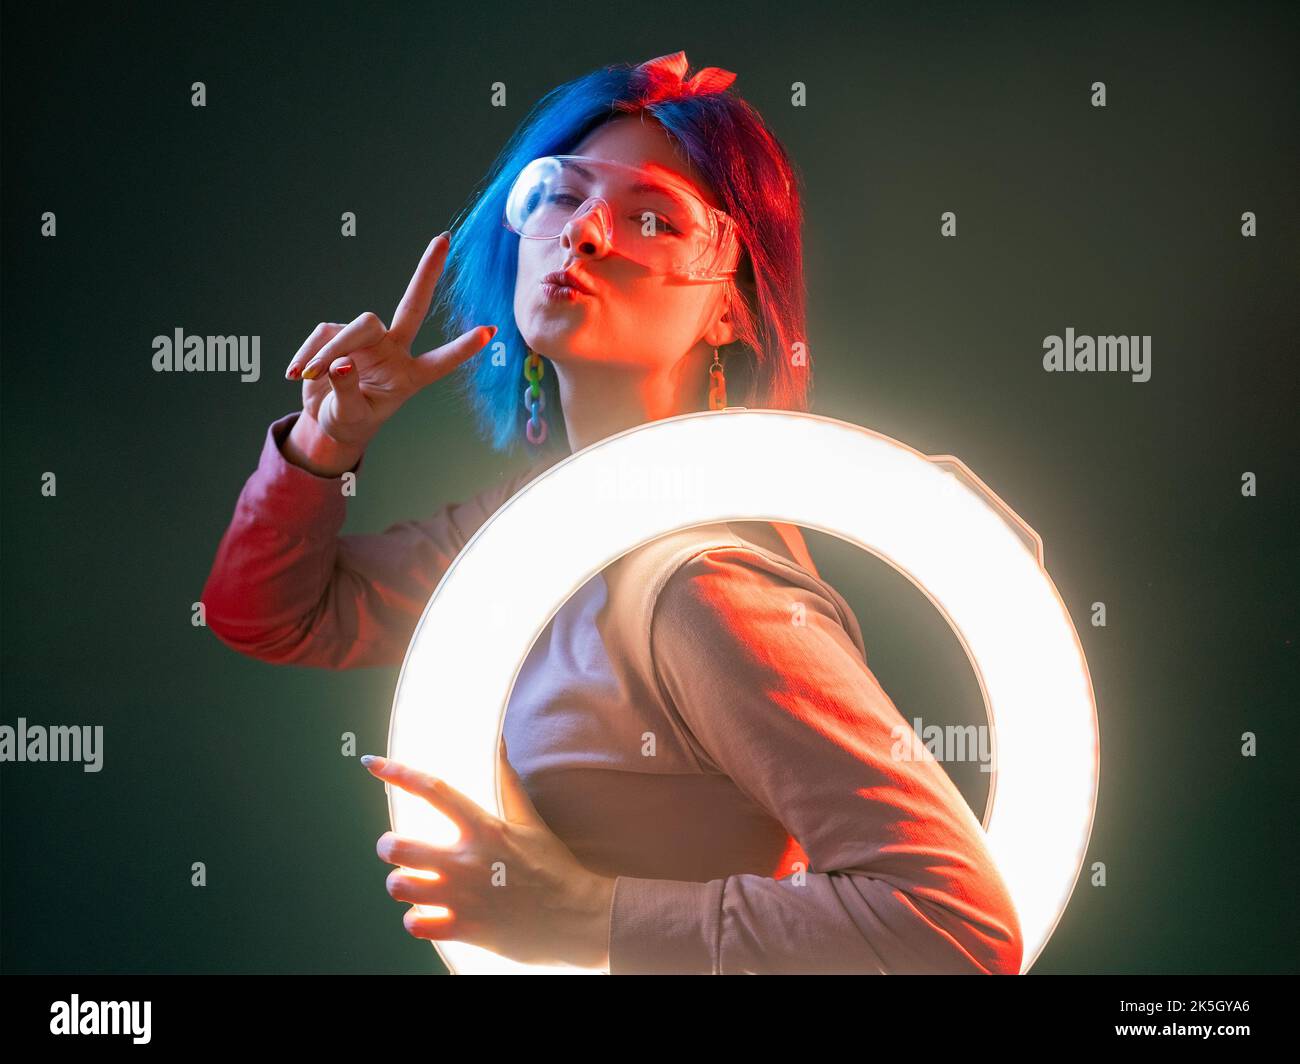 Neonlicht-Modell. Techno-Style. Futuristische Beleuchtung. Flirty nette  Frau pouts Lippen mit LED runden Blitz Lampe in rot leuchten isoliert auf  dunklen Backgroun Stockfotografie - Alamy